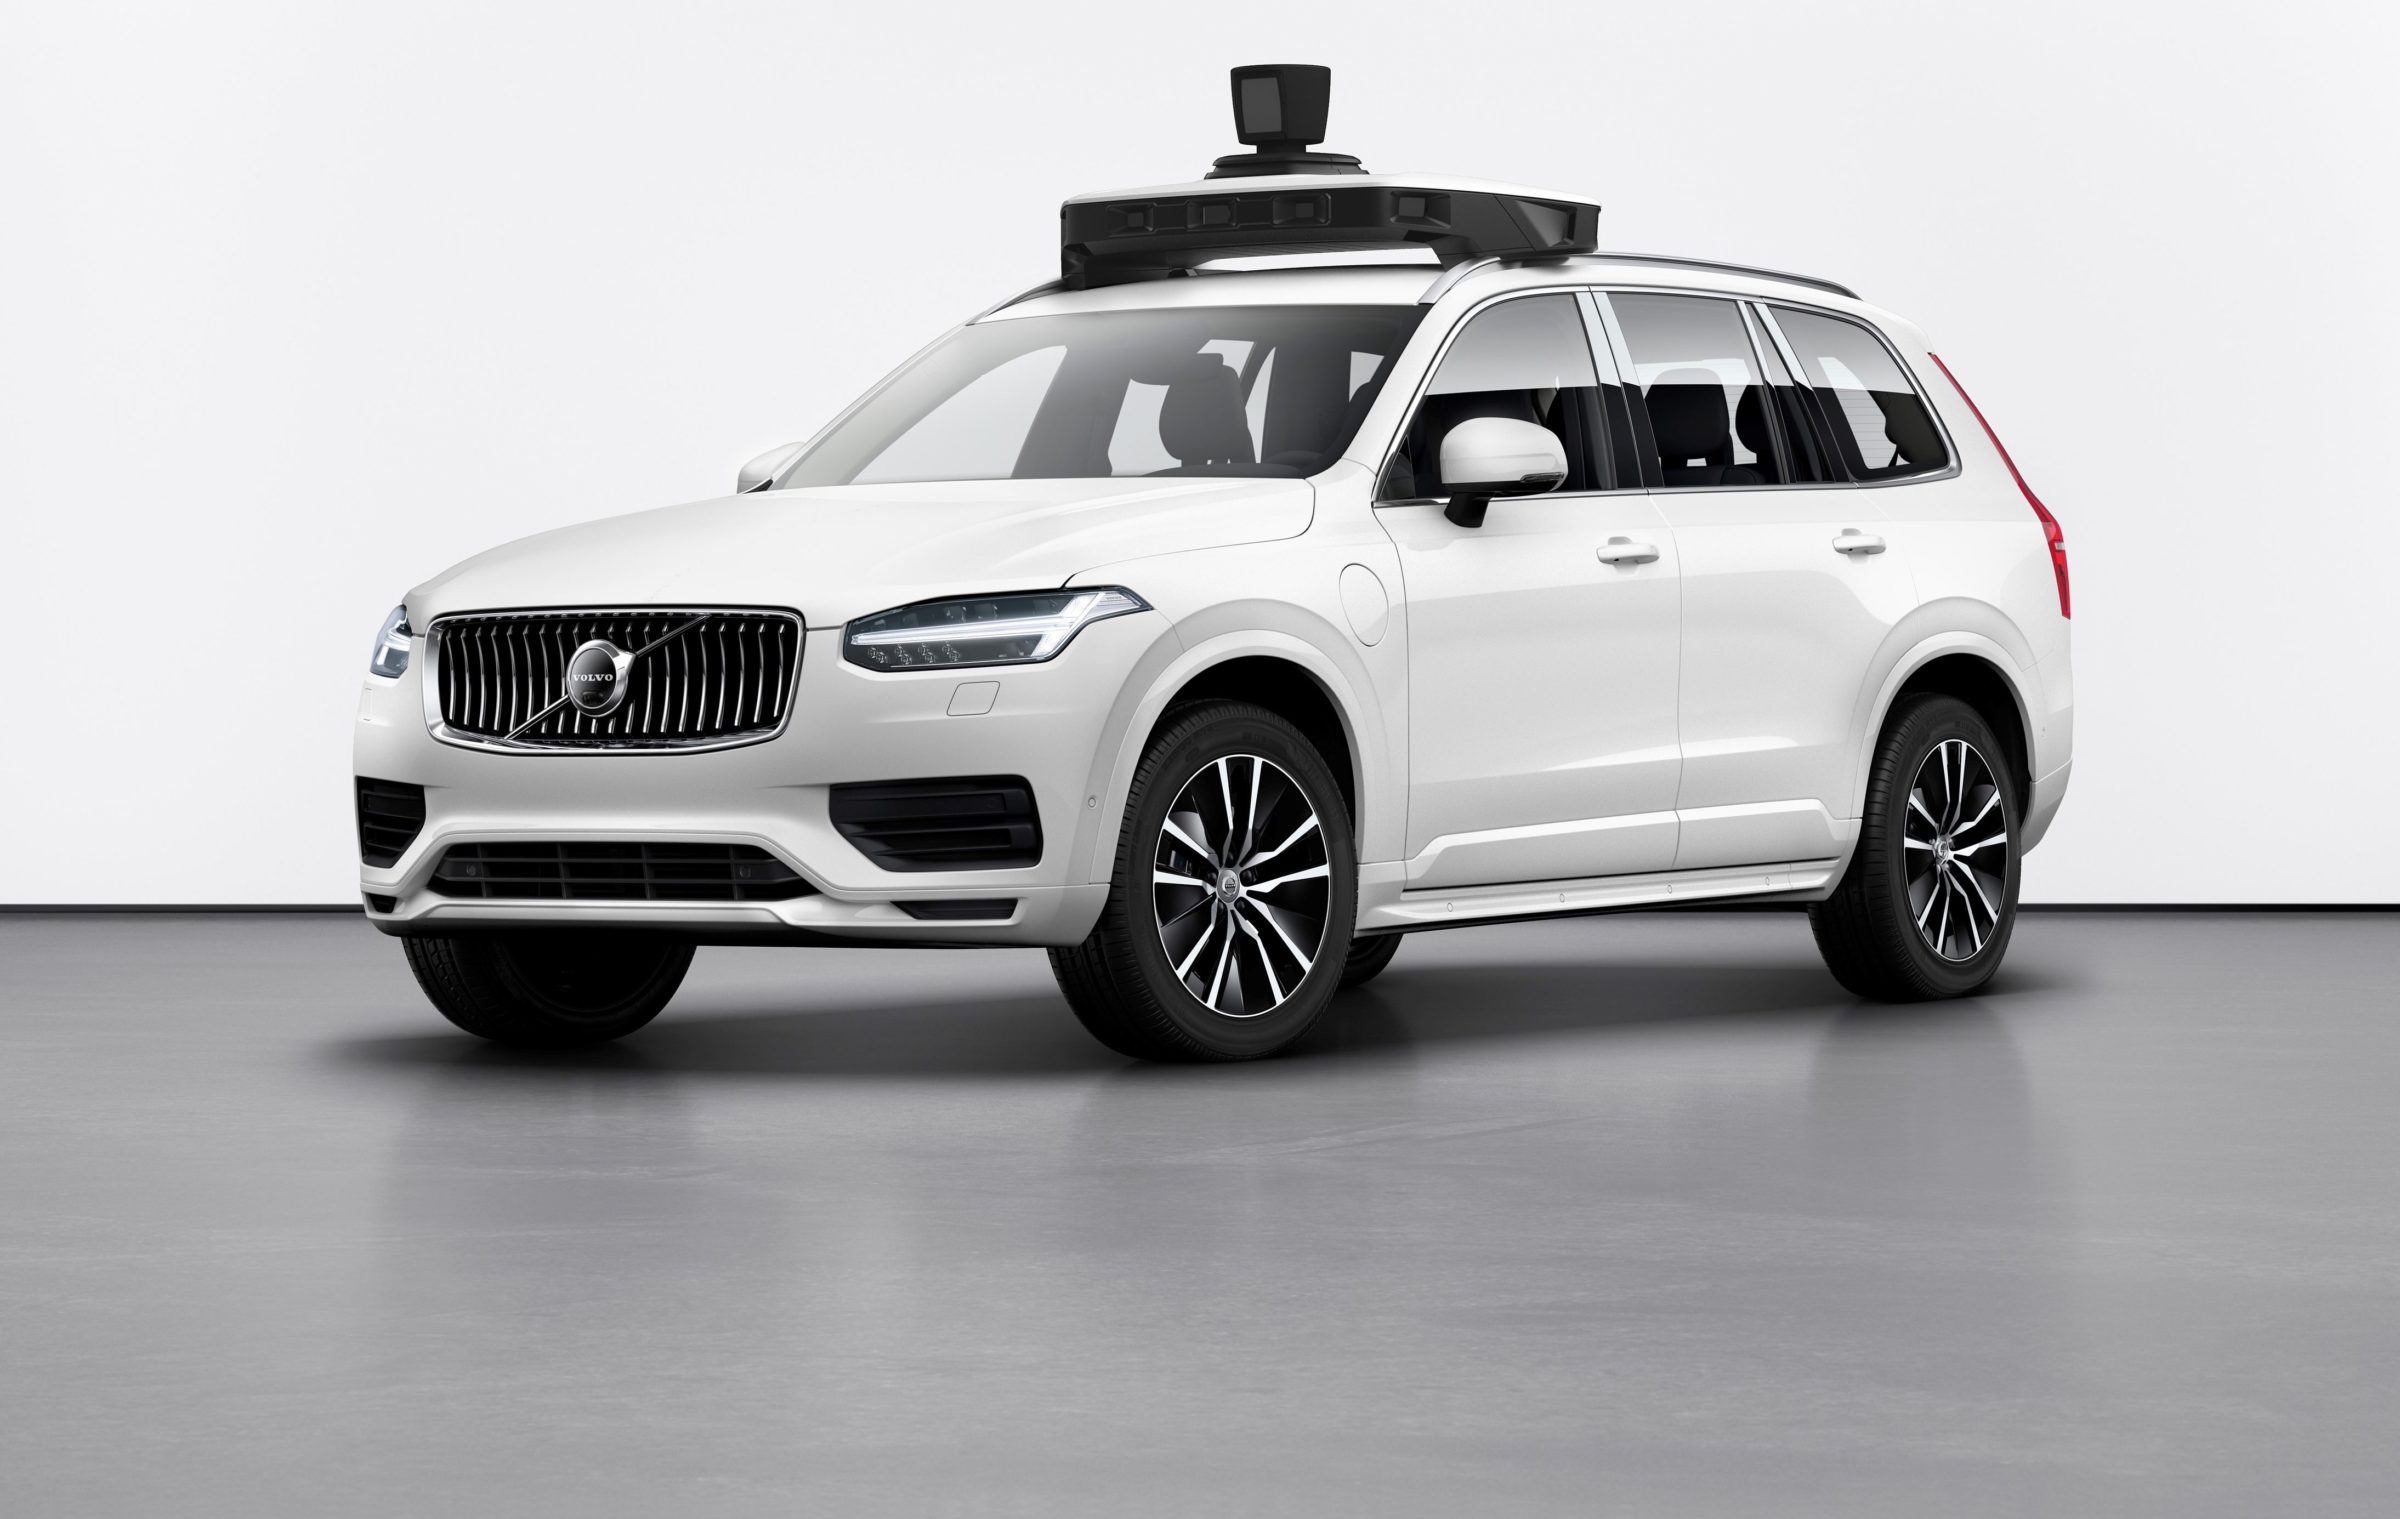 Com tecnologia conjunta, Volvo e Uber produzirão autônomos